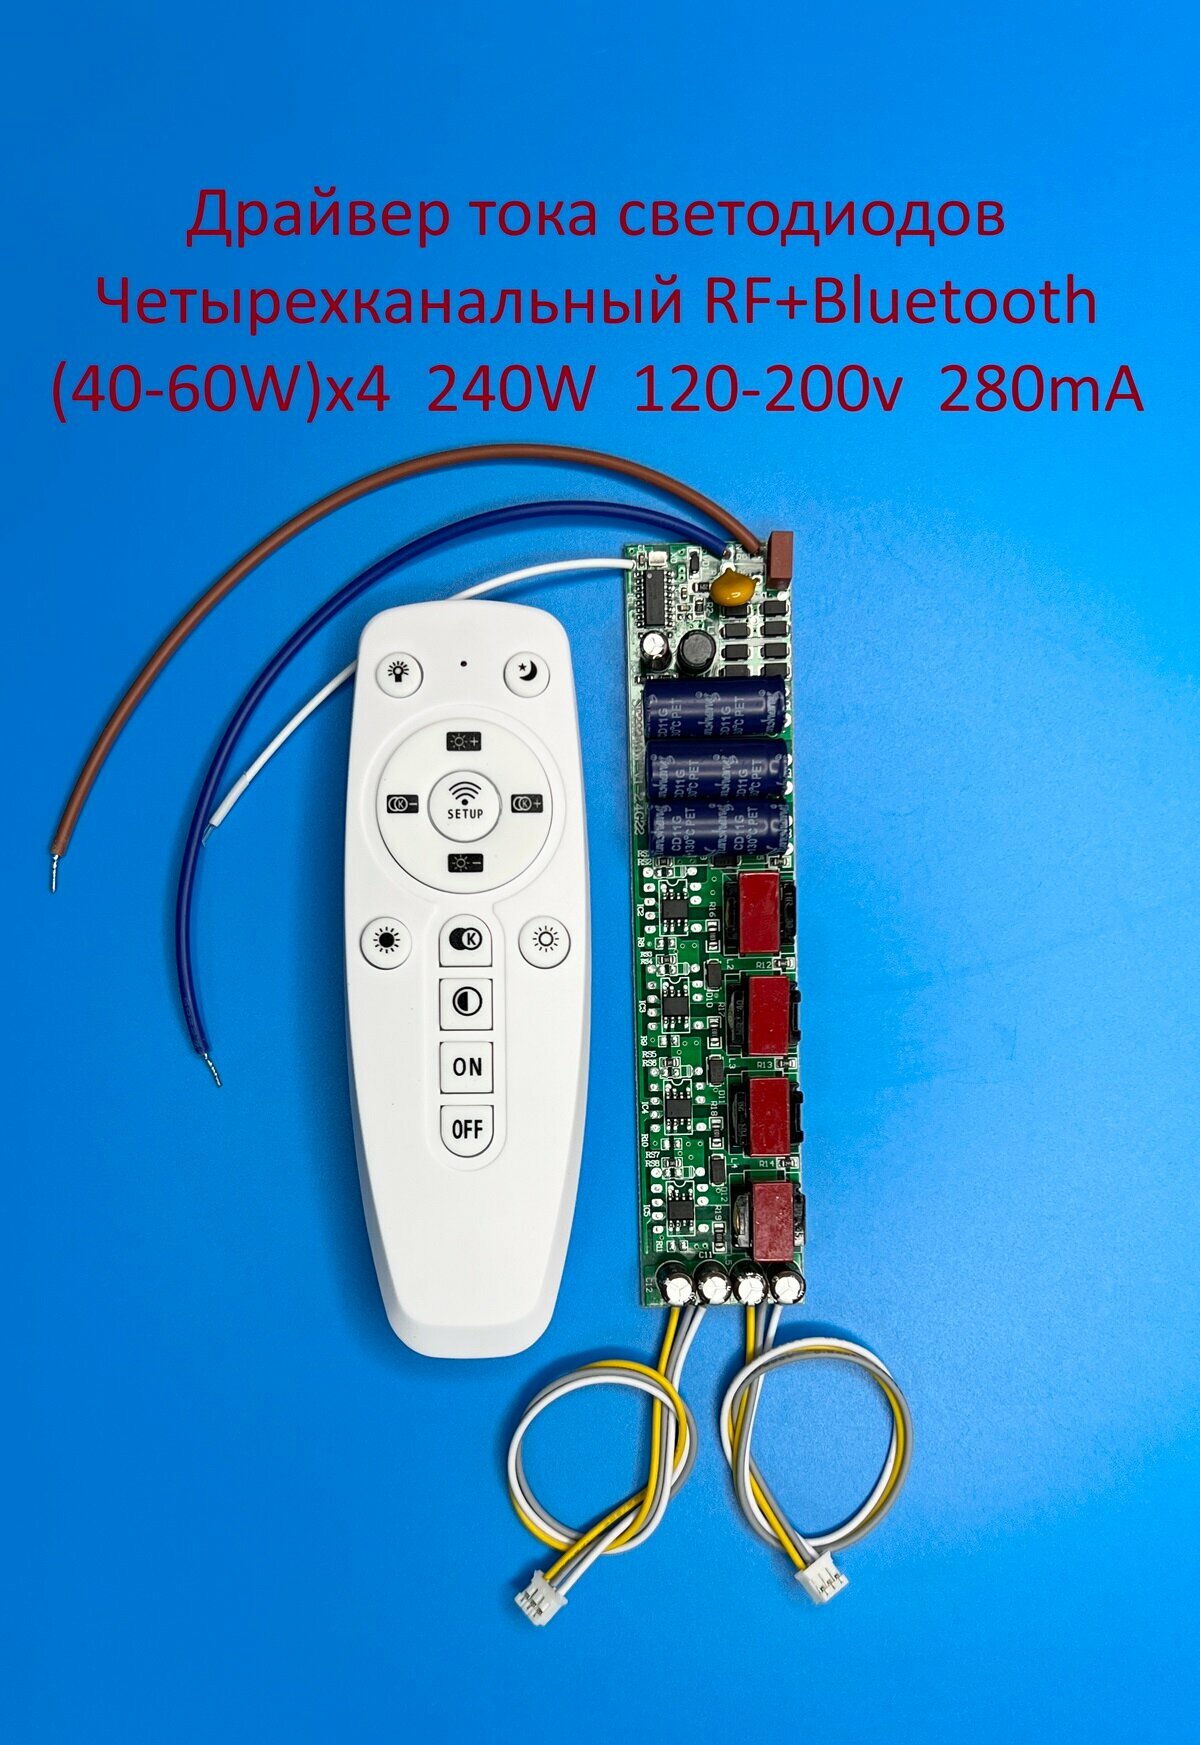 Драйвер тока светодиодов четырёхканальный RF+Bluetooth 240W (40-60)x4 120-200v 280mA Без корпуса